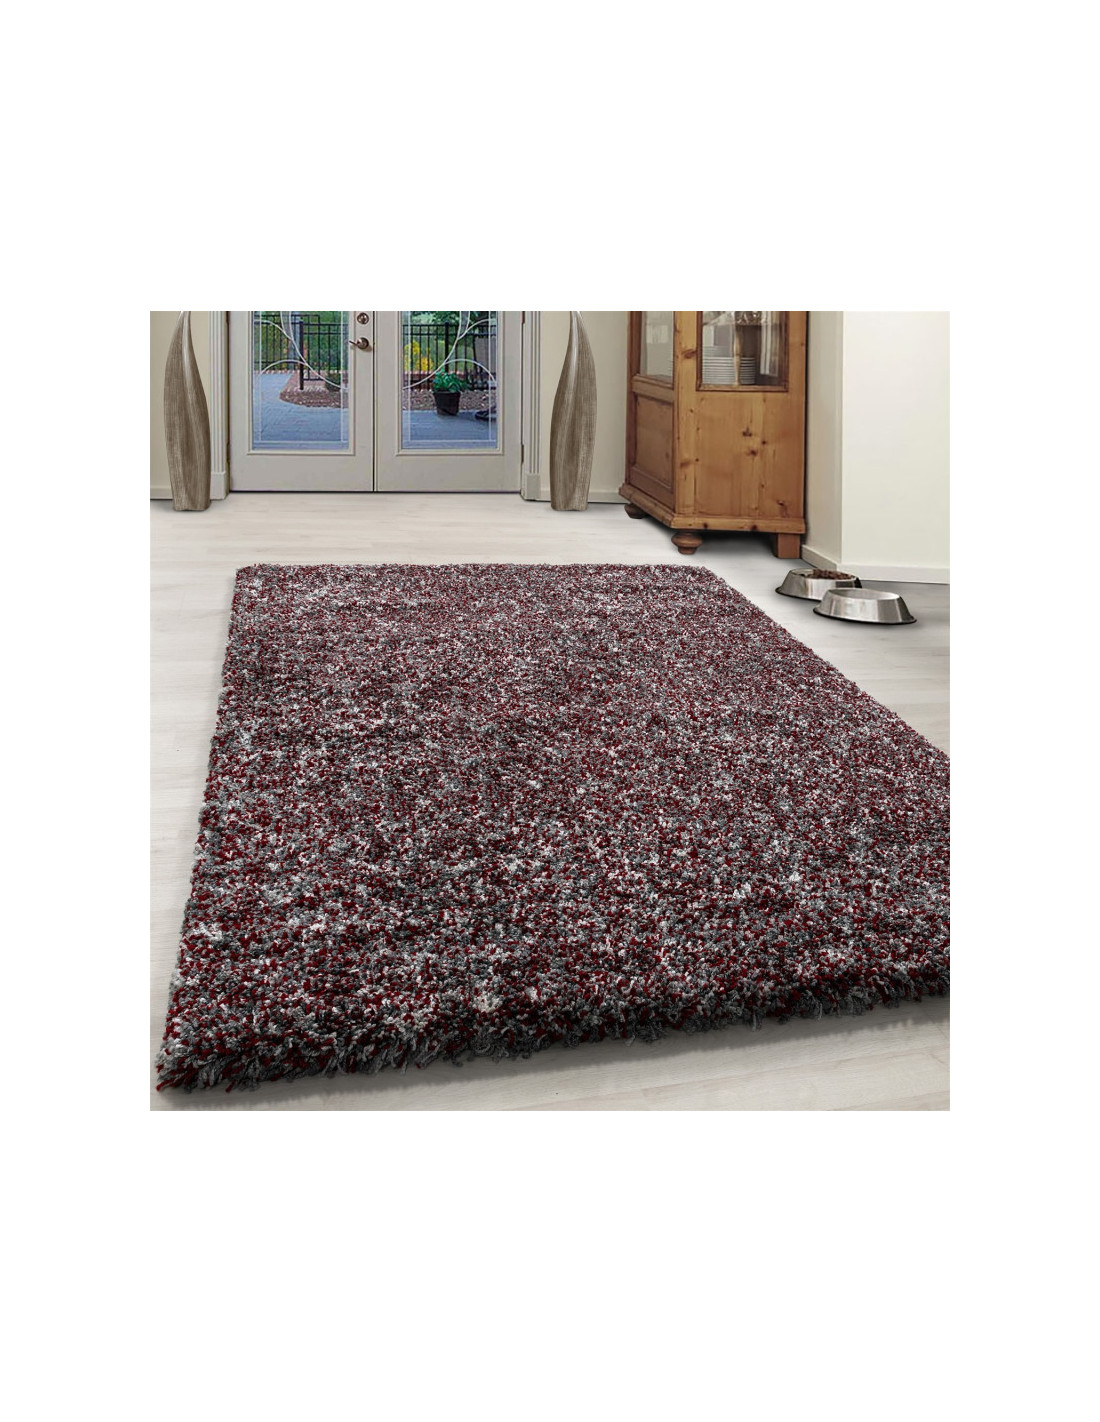 Living room shaggy carpet high quality long pile deep pile red white gray mottled